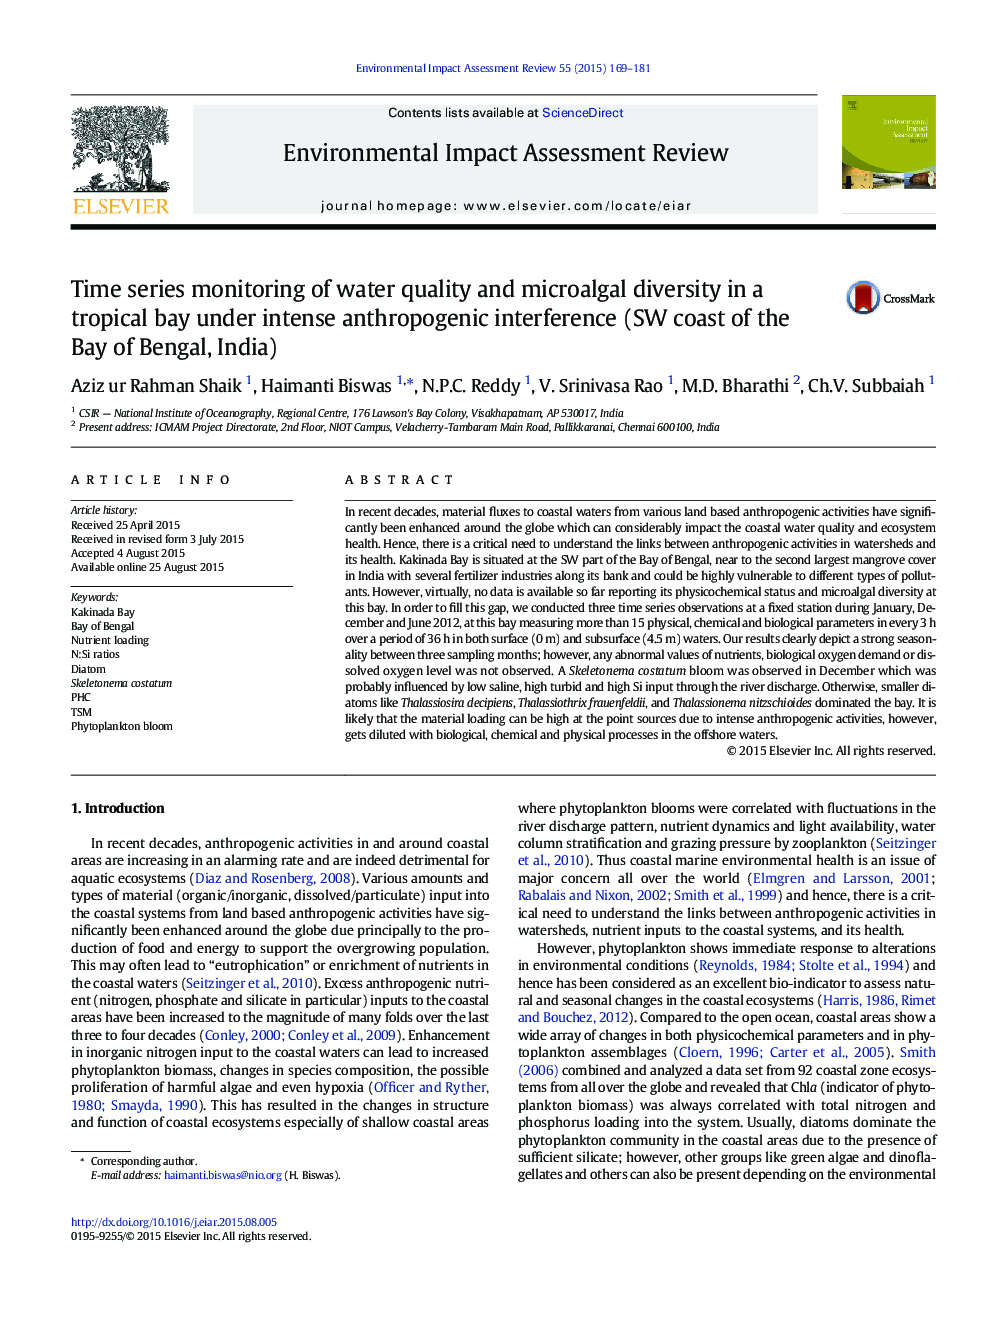 نظارت بر کیفیت زمانی و کیفیت آب و تنوع میکروالگل در یک خلیج گرمسیری تحت شدت تداخل انسان شناسی (ساحل دریای خلیج بنگال، هند) 